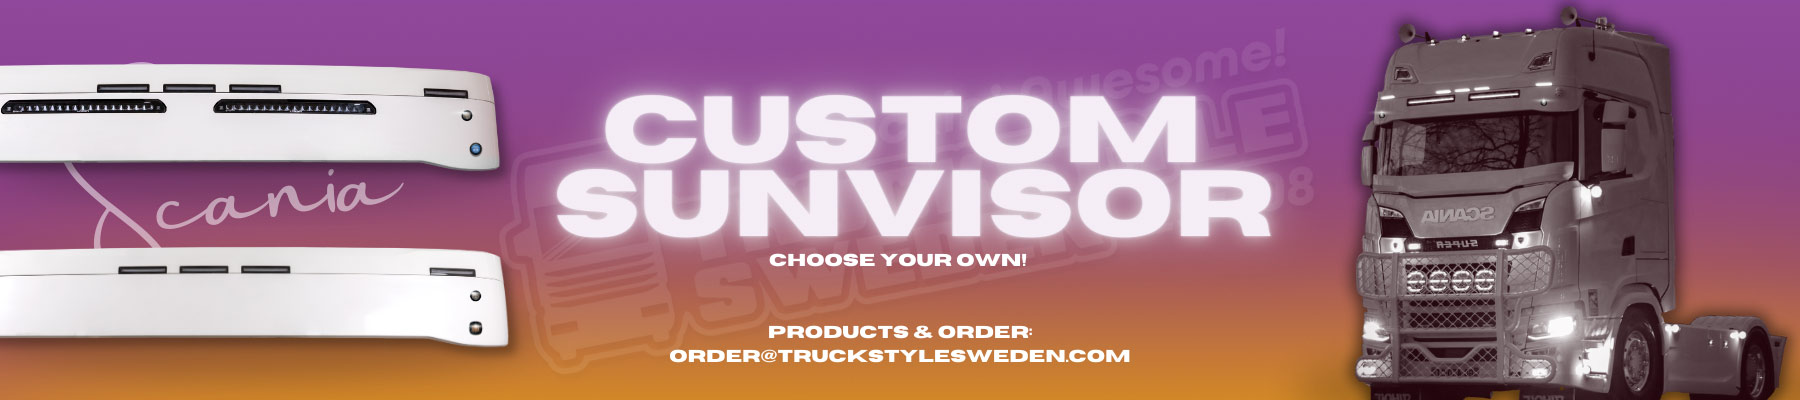 Custom sunvisors